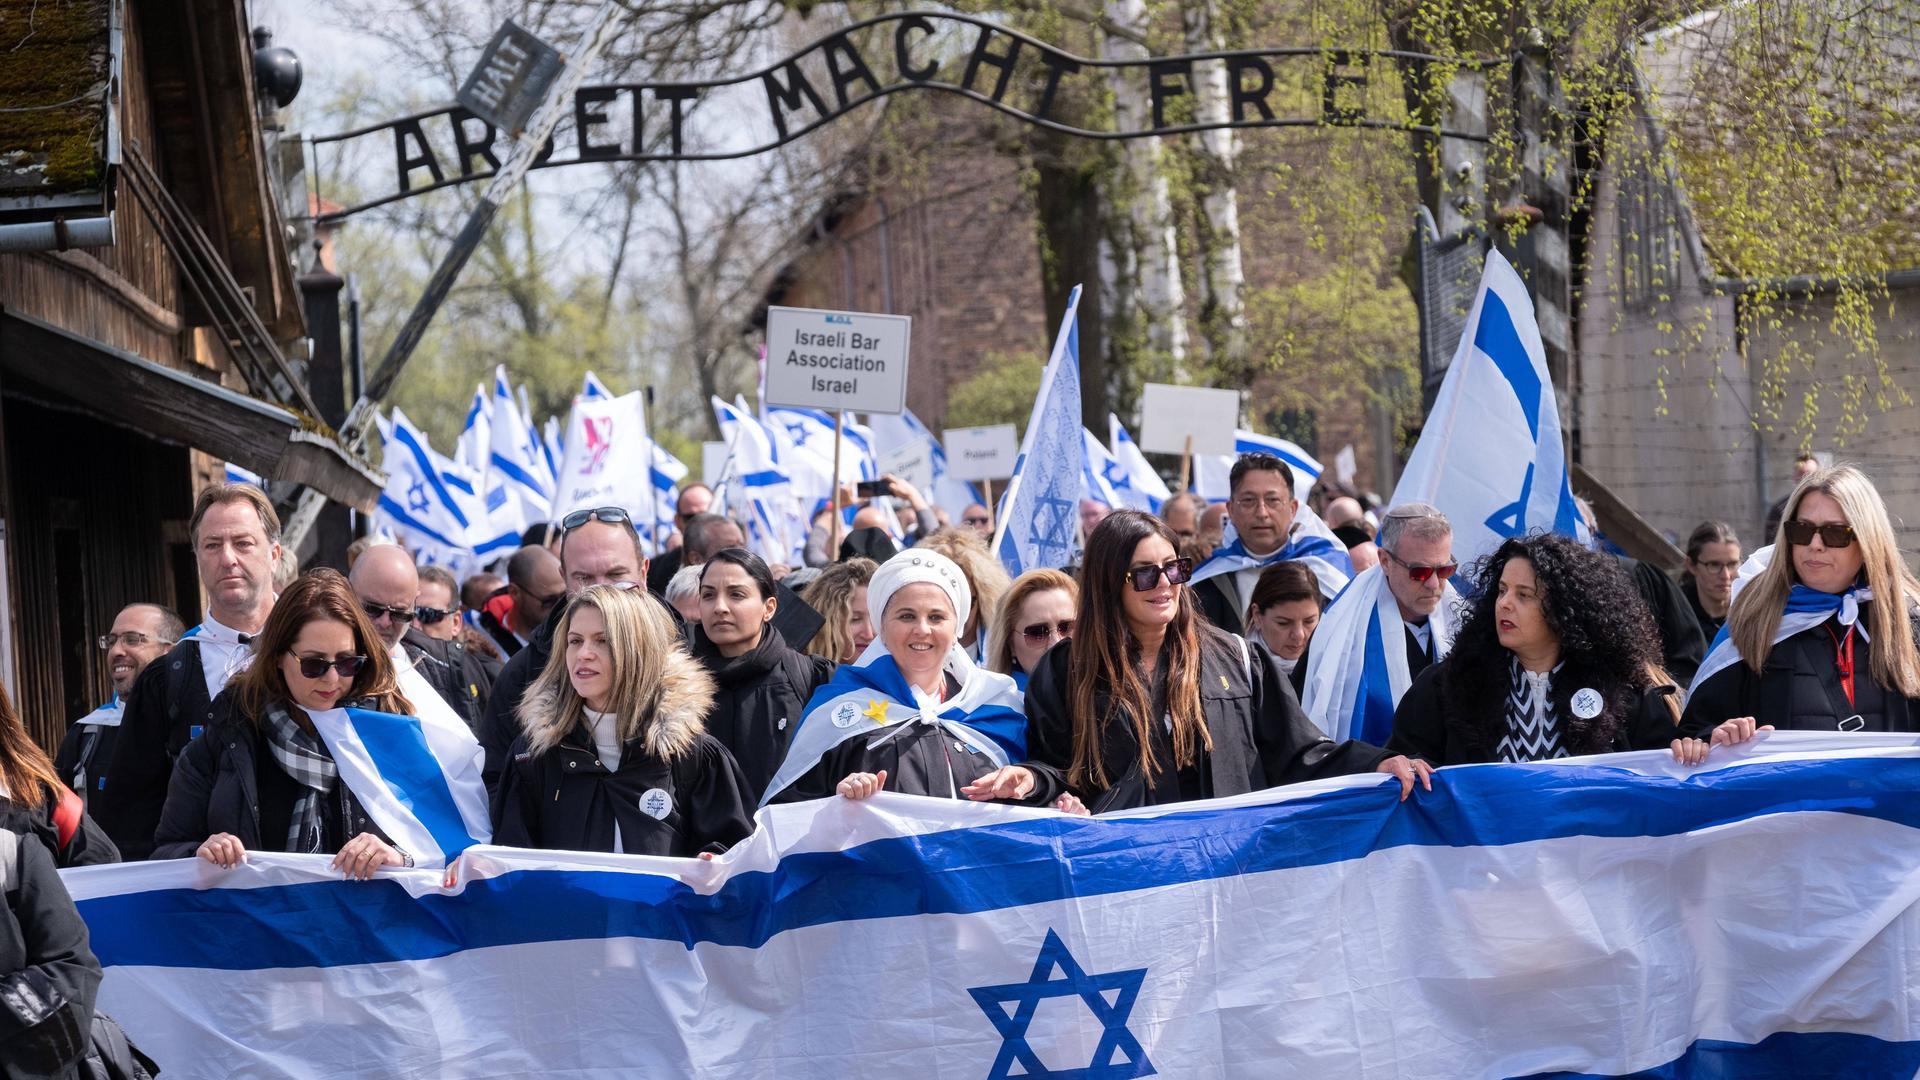 Eine Menschengruppe, teilweise mit Israel-Flaggen, läuft unter dem Schild "Arbeit macht frei" im Konzentrationslager Auschwitz hindurch.